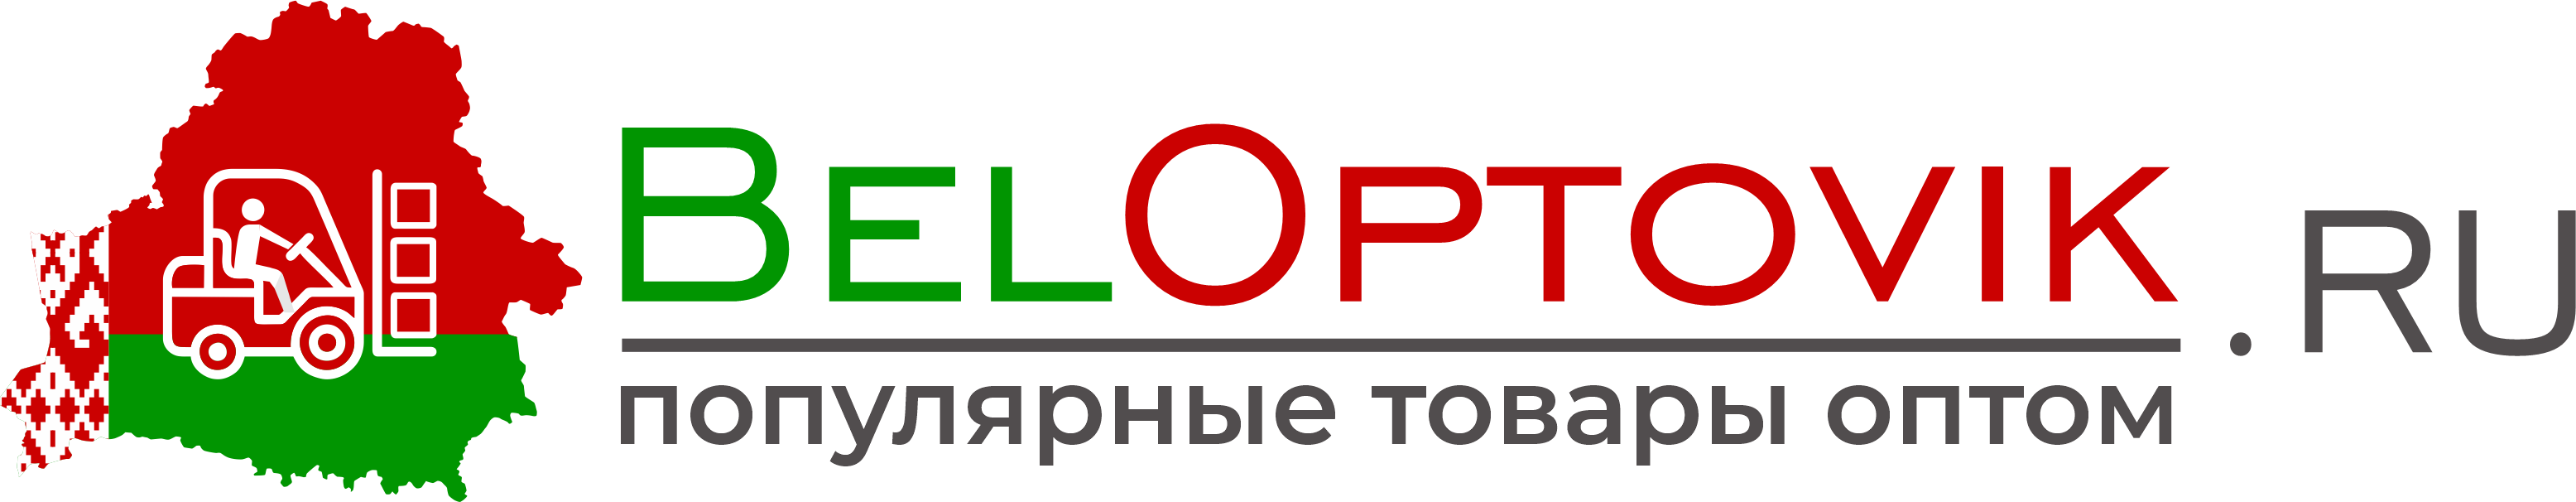 Оптовый интернет-магазин beloptovik.ru